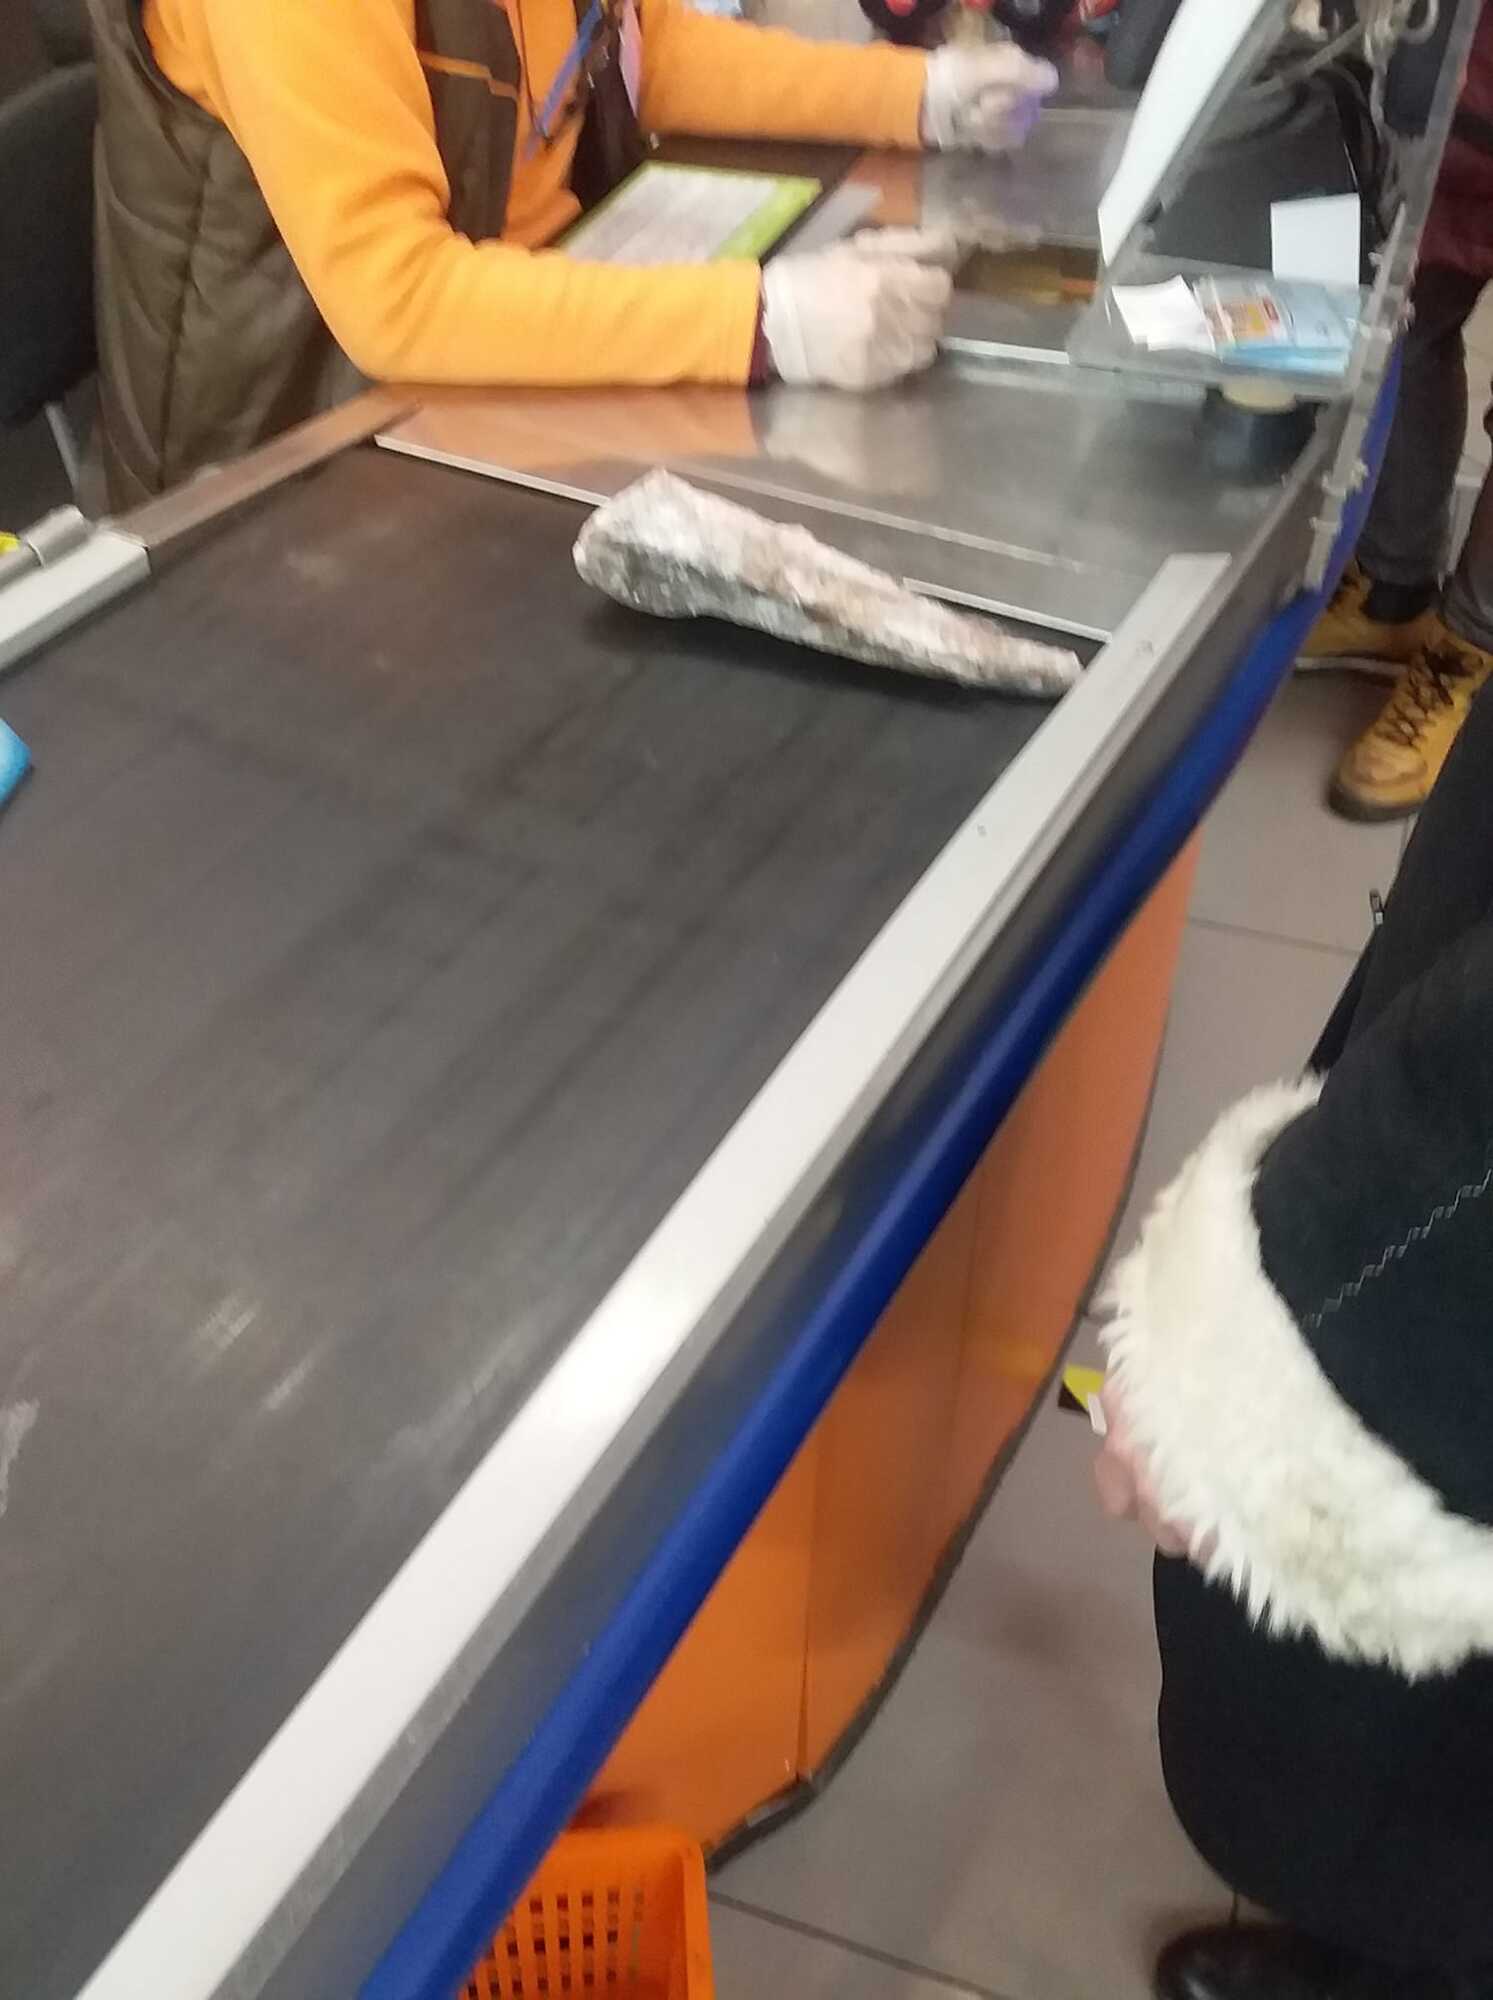 Женщина купила замороженную рыбу без полиэтиленового пакета, чтобы не платить за него